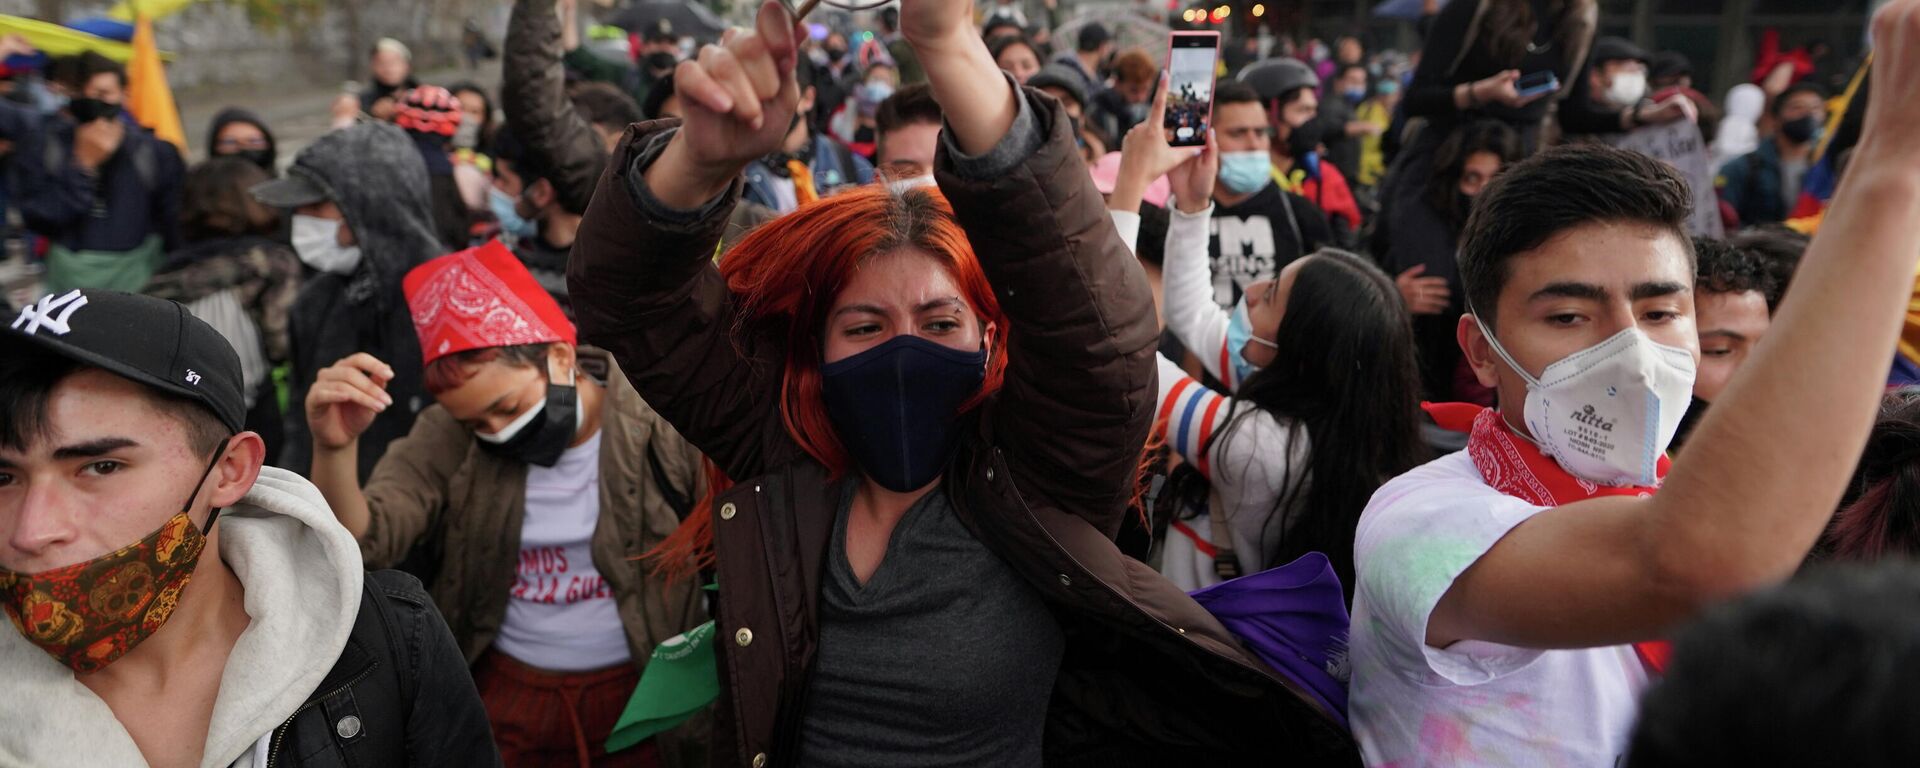 Manifestantes durante una protesta contra el Gobierno en Bogotá el 4 de mayo de 2021 - Sputnik Mundo, 1920, 05.05.2021